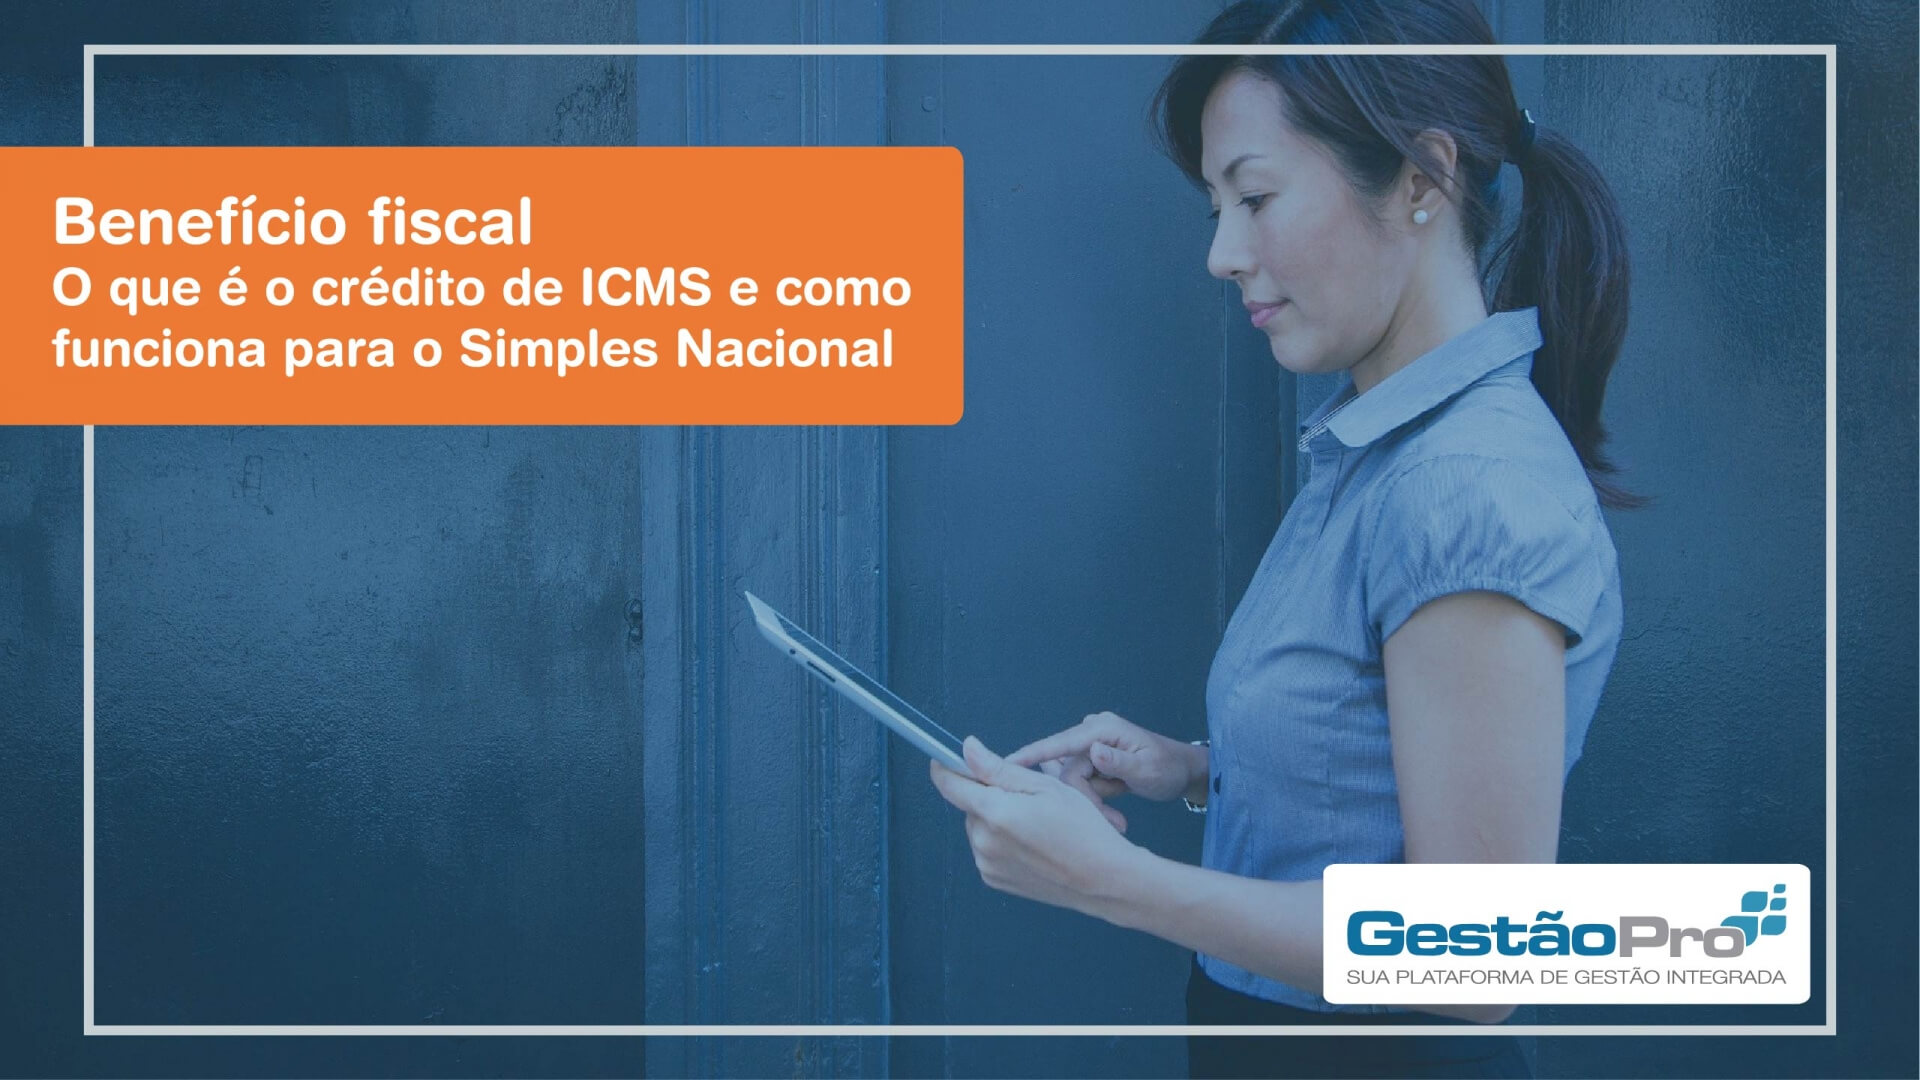 Benefício fiscal - O que é o crédito de ICMS e como funciona para o Simples Nacional